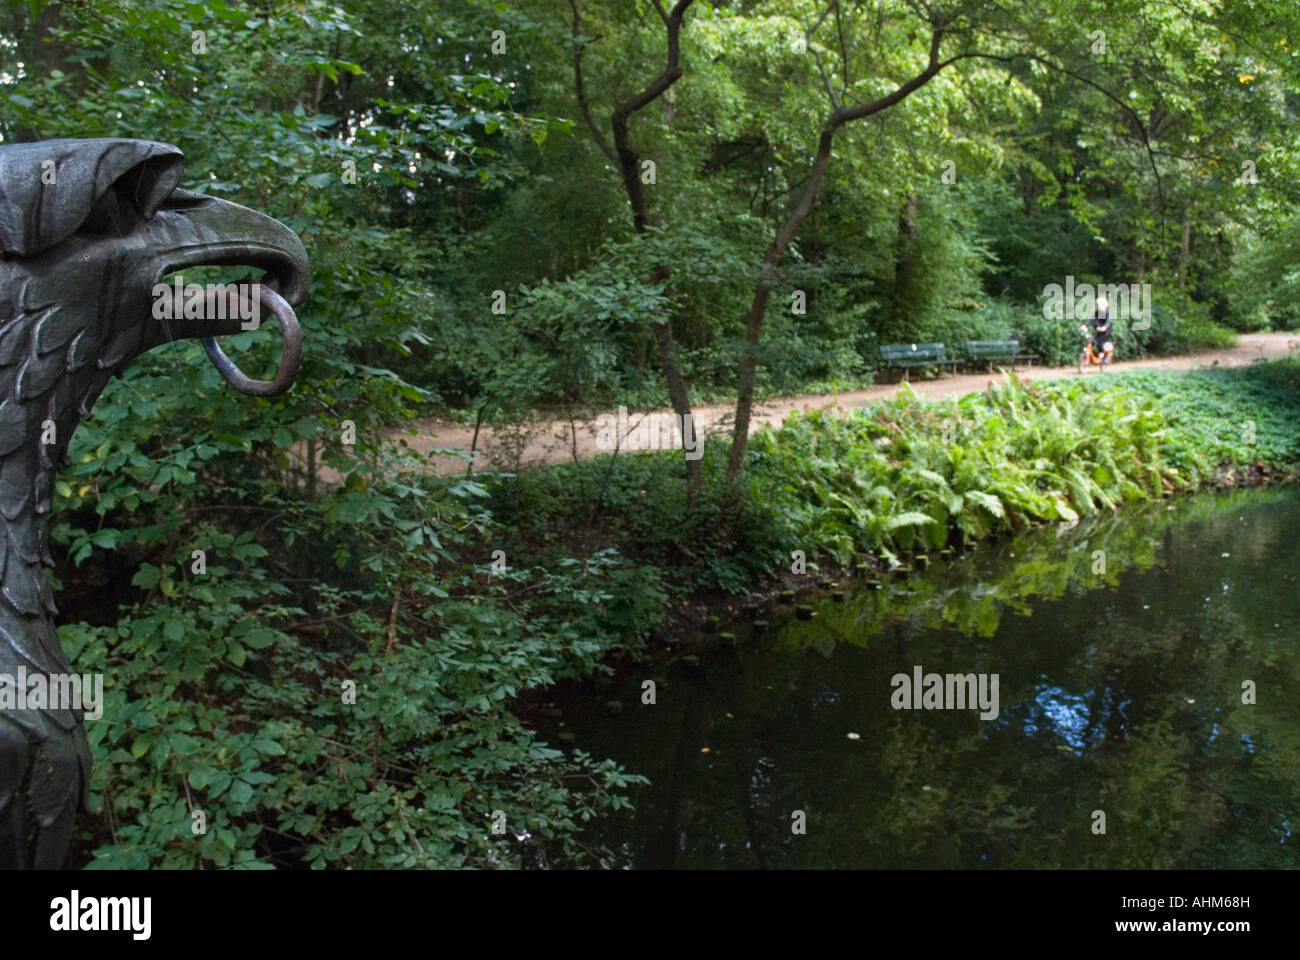 vista desde un puente de uno de los canales que atraviesa el tiergarten.berlin,alemania,germany Stock Photo